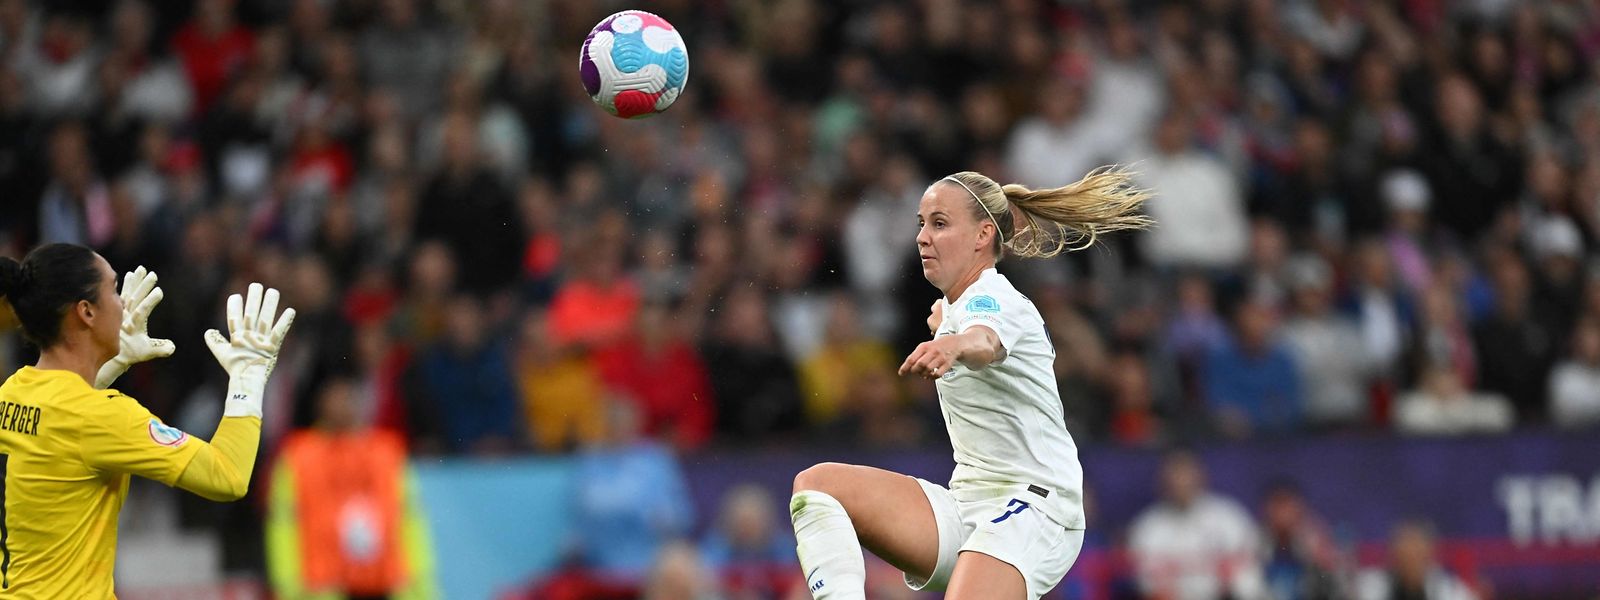 L'attaquante anglaise Beth Mead tire pour marquer le premier but du match de football du groupe A de l'UEFA Women's Euro 2022 entre l'Angleterre et l'Autriche à Old Trafford à Manchester.